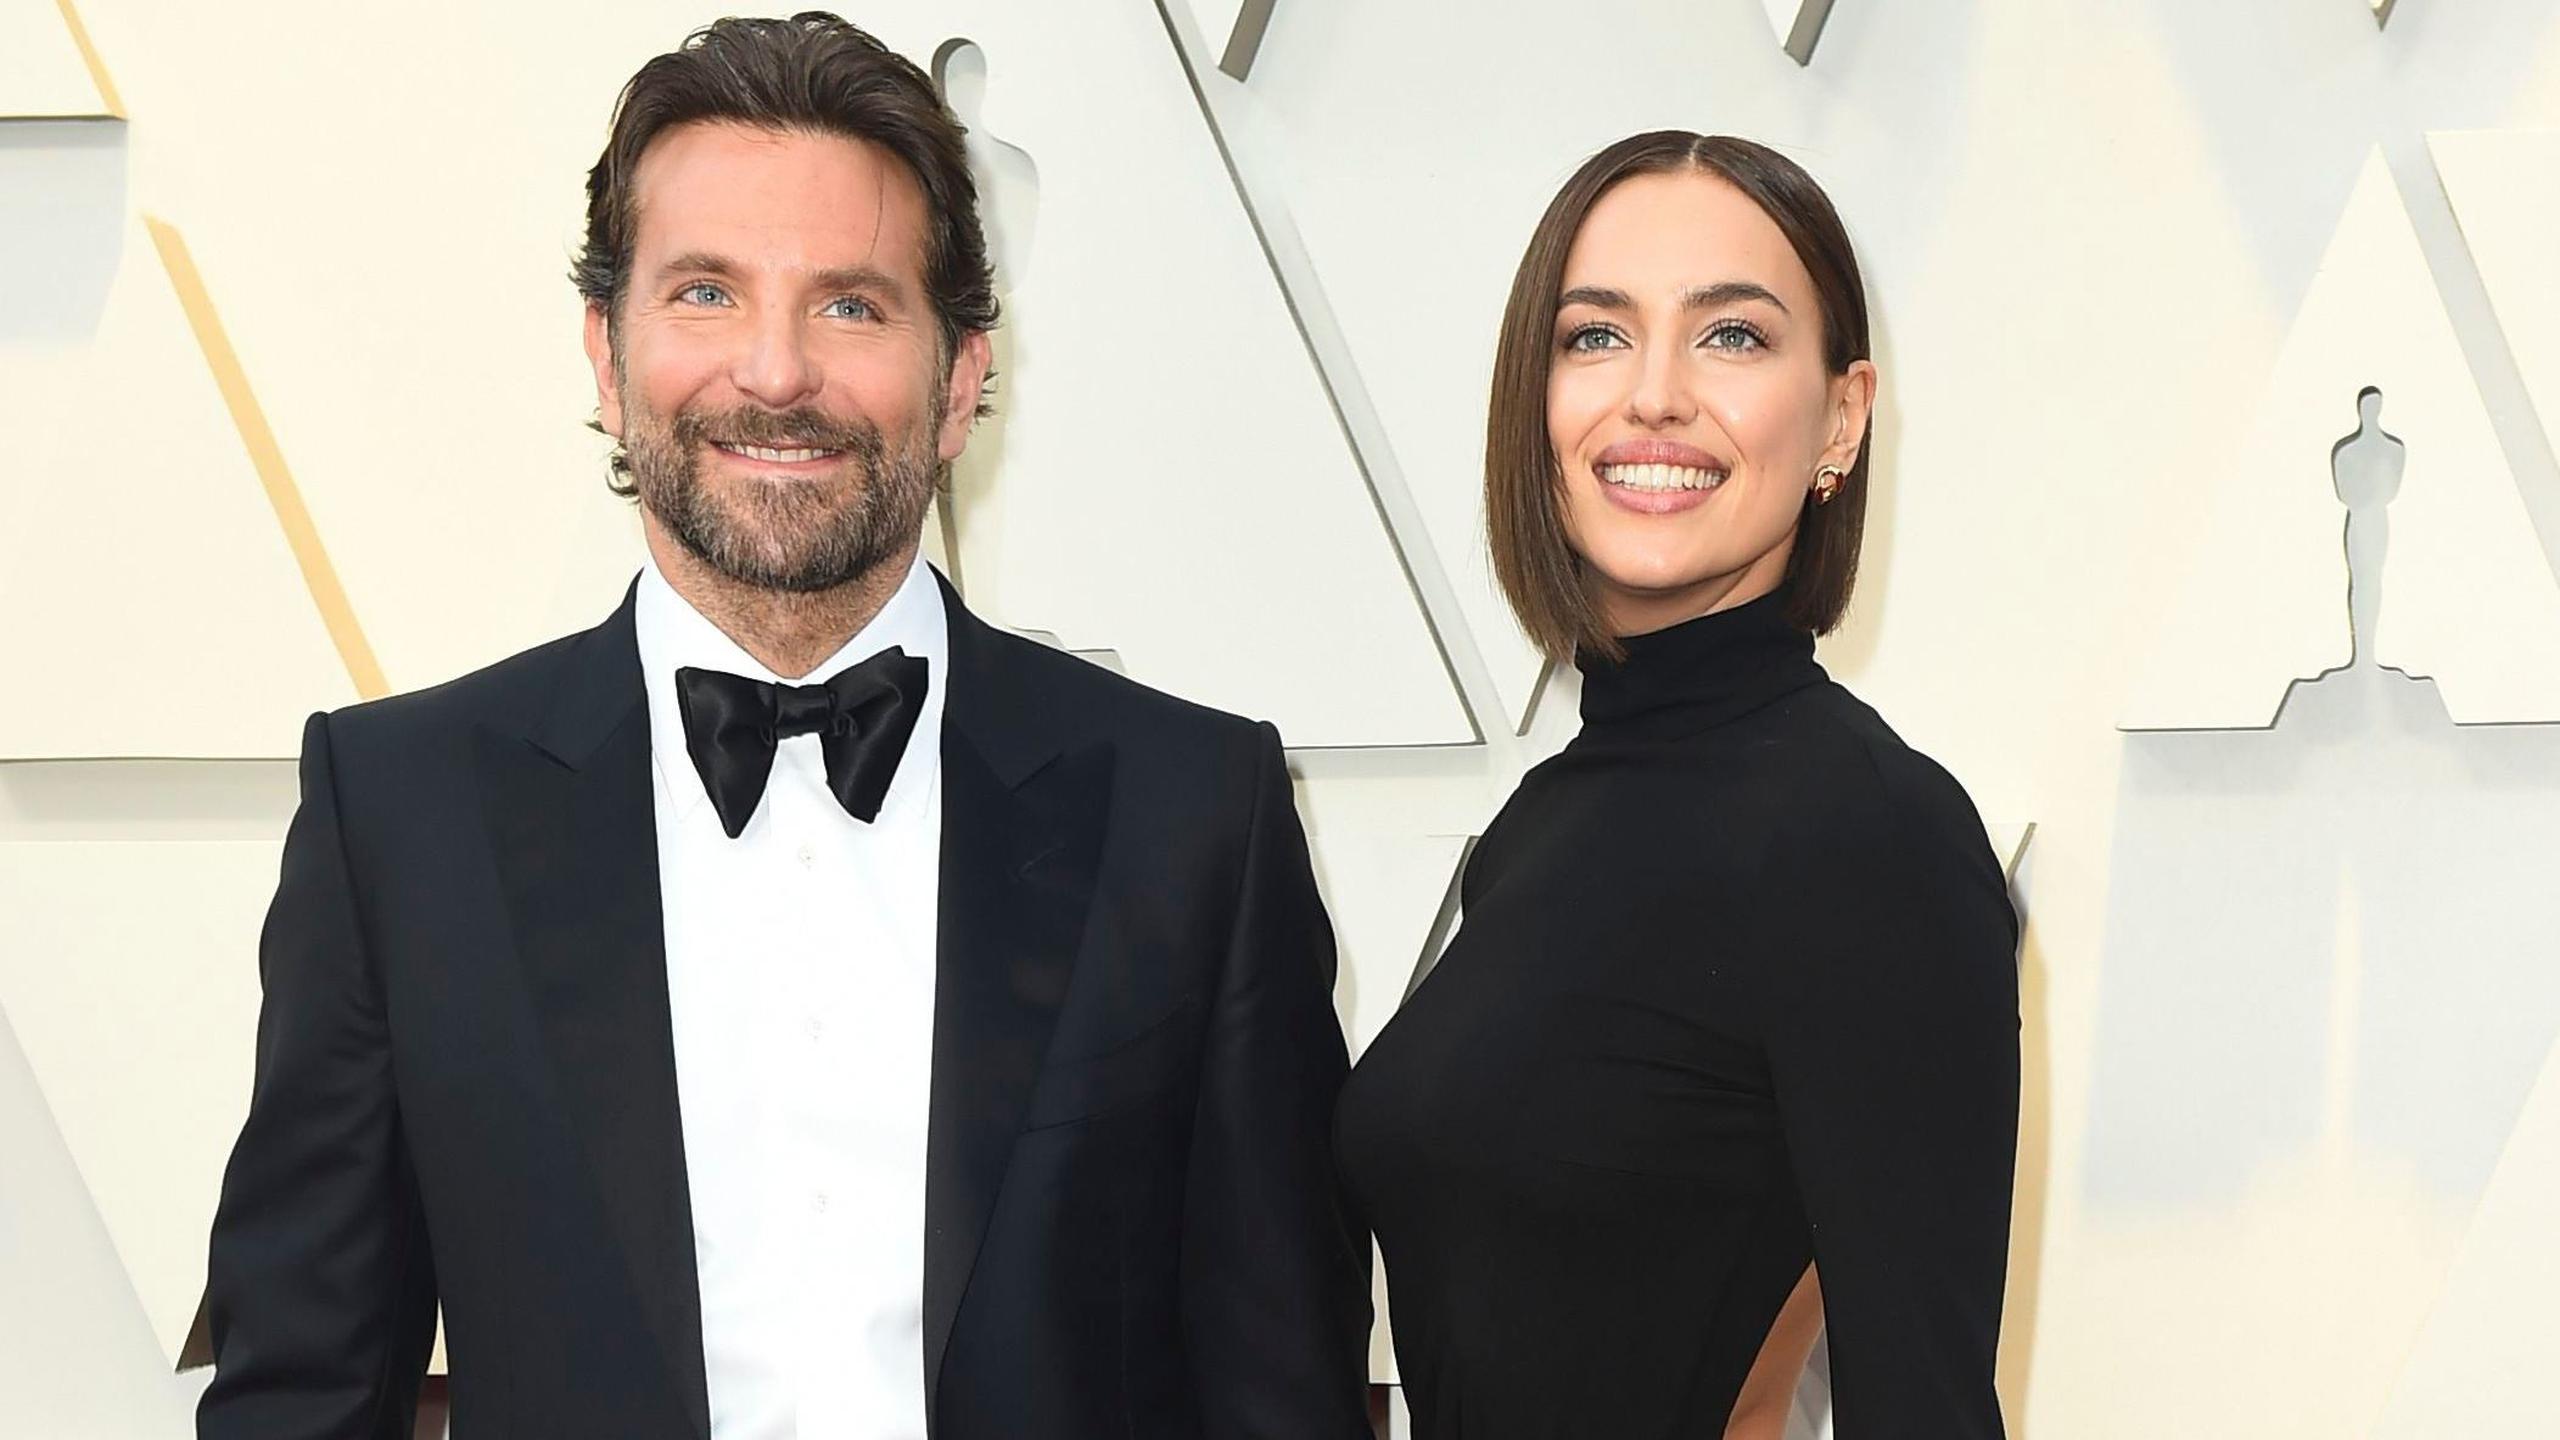 El actor y director Bradley Cooper y la modelo Irina Shayk terminaron su relación este año tras cuatro años juntos.